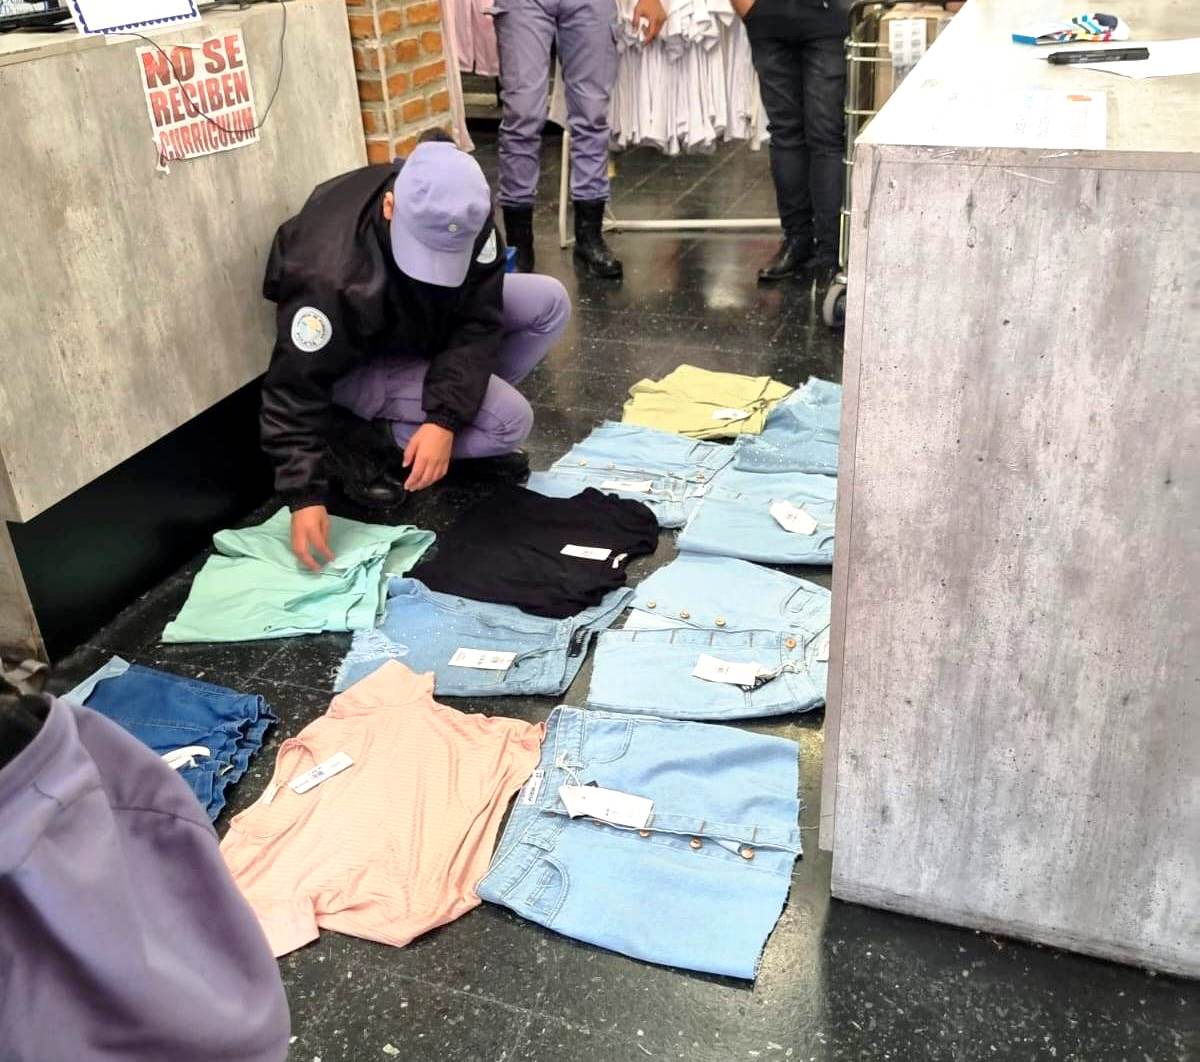 #PolicíaDeFormosa 
#Mecheras Aprehenden a dos correntinas por robar prendas de vestir en tres comercios 

Los locales de ropa están ubicados en el microcentro de la ciudad

formosa.gob.ar/noticia/31741/…